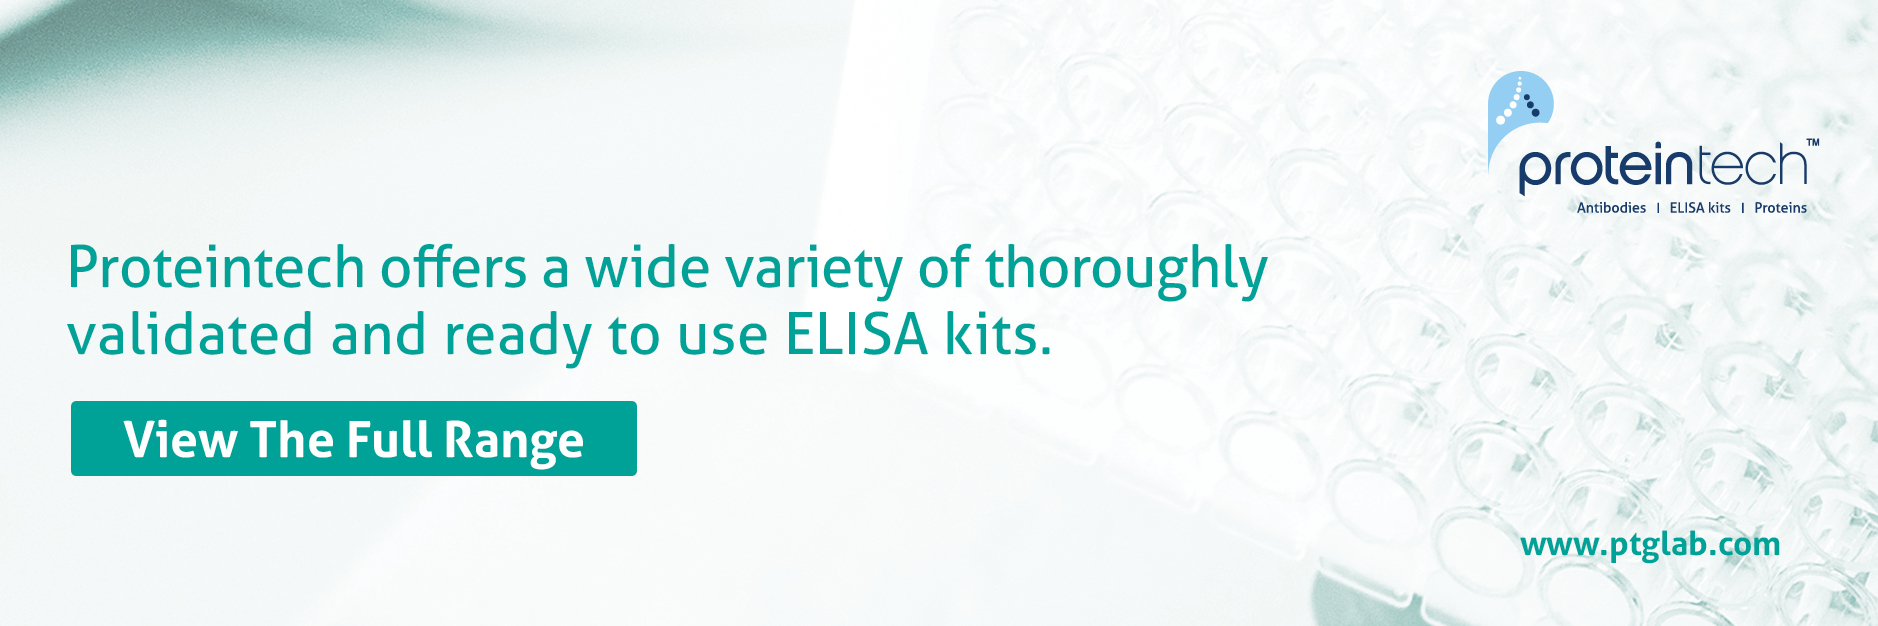 ELISA kits